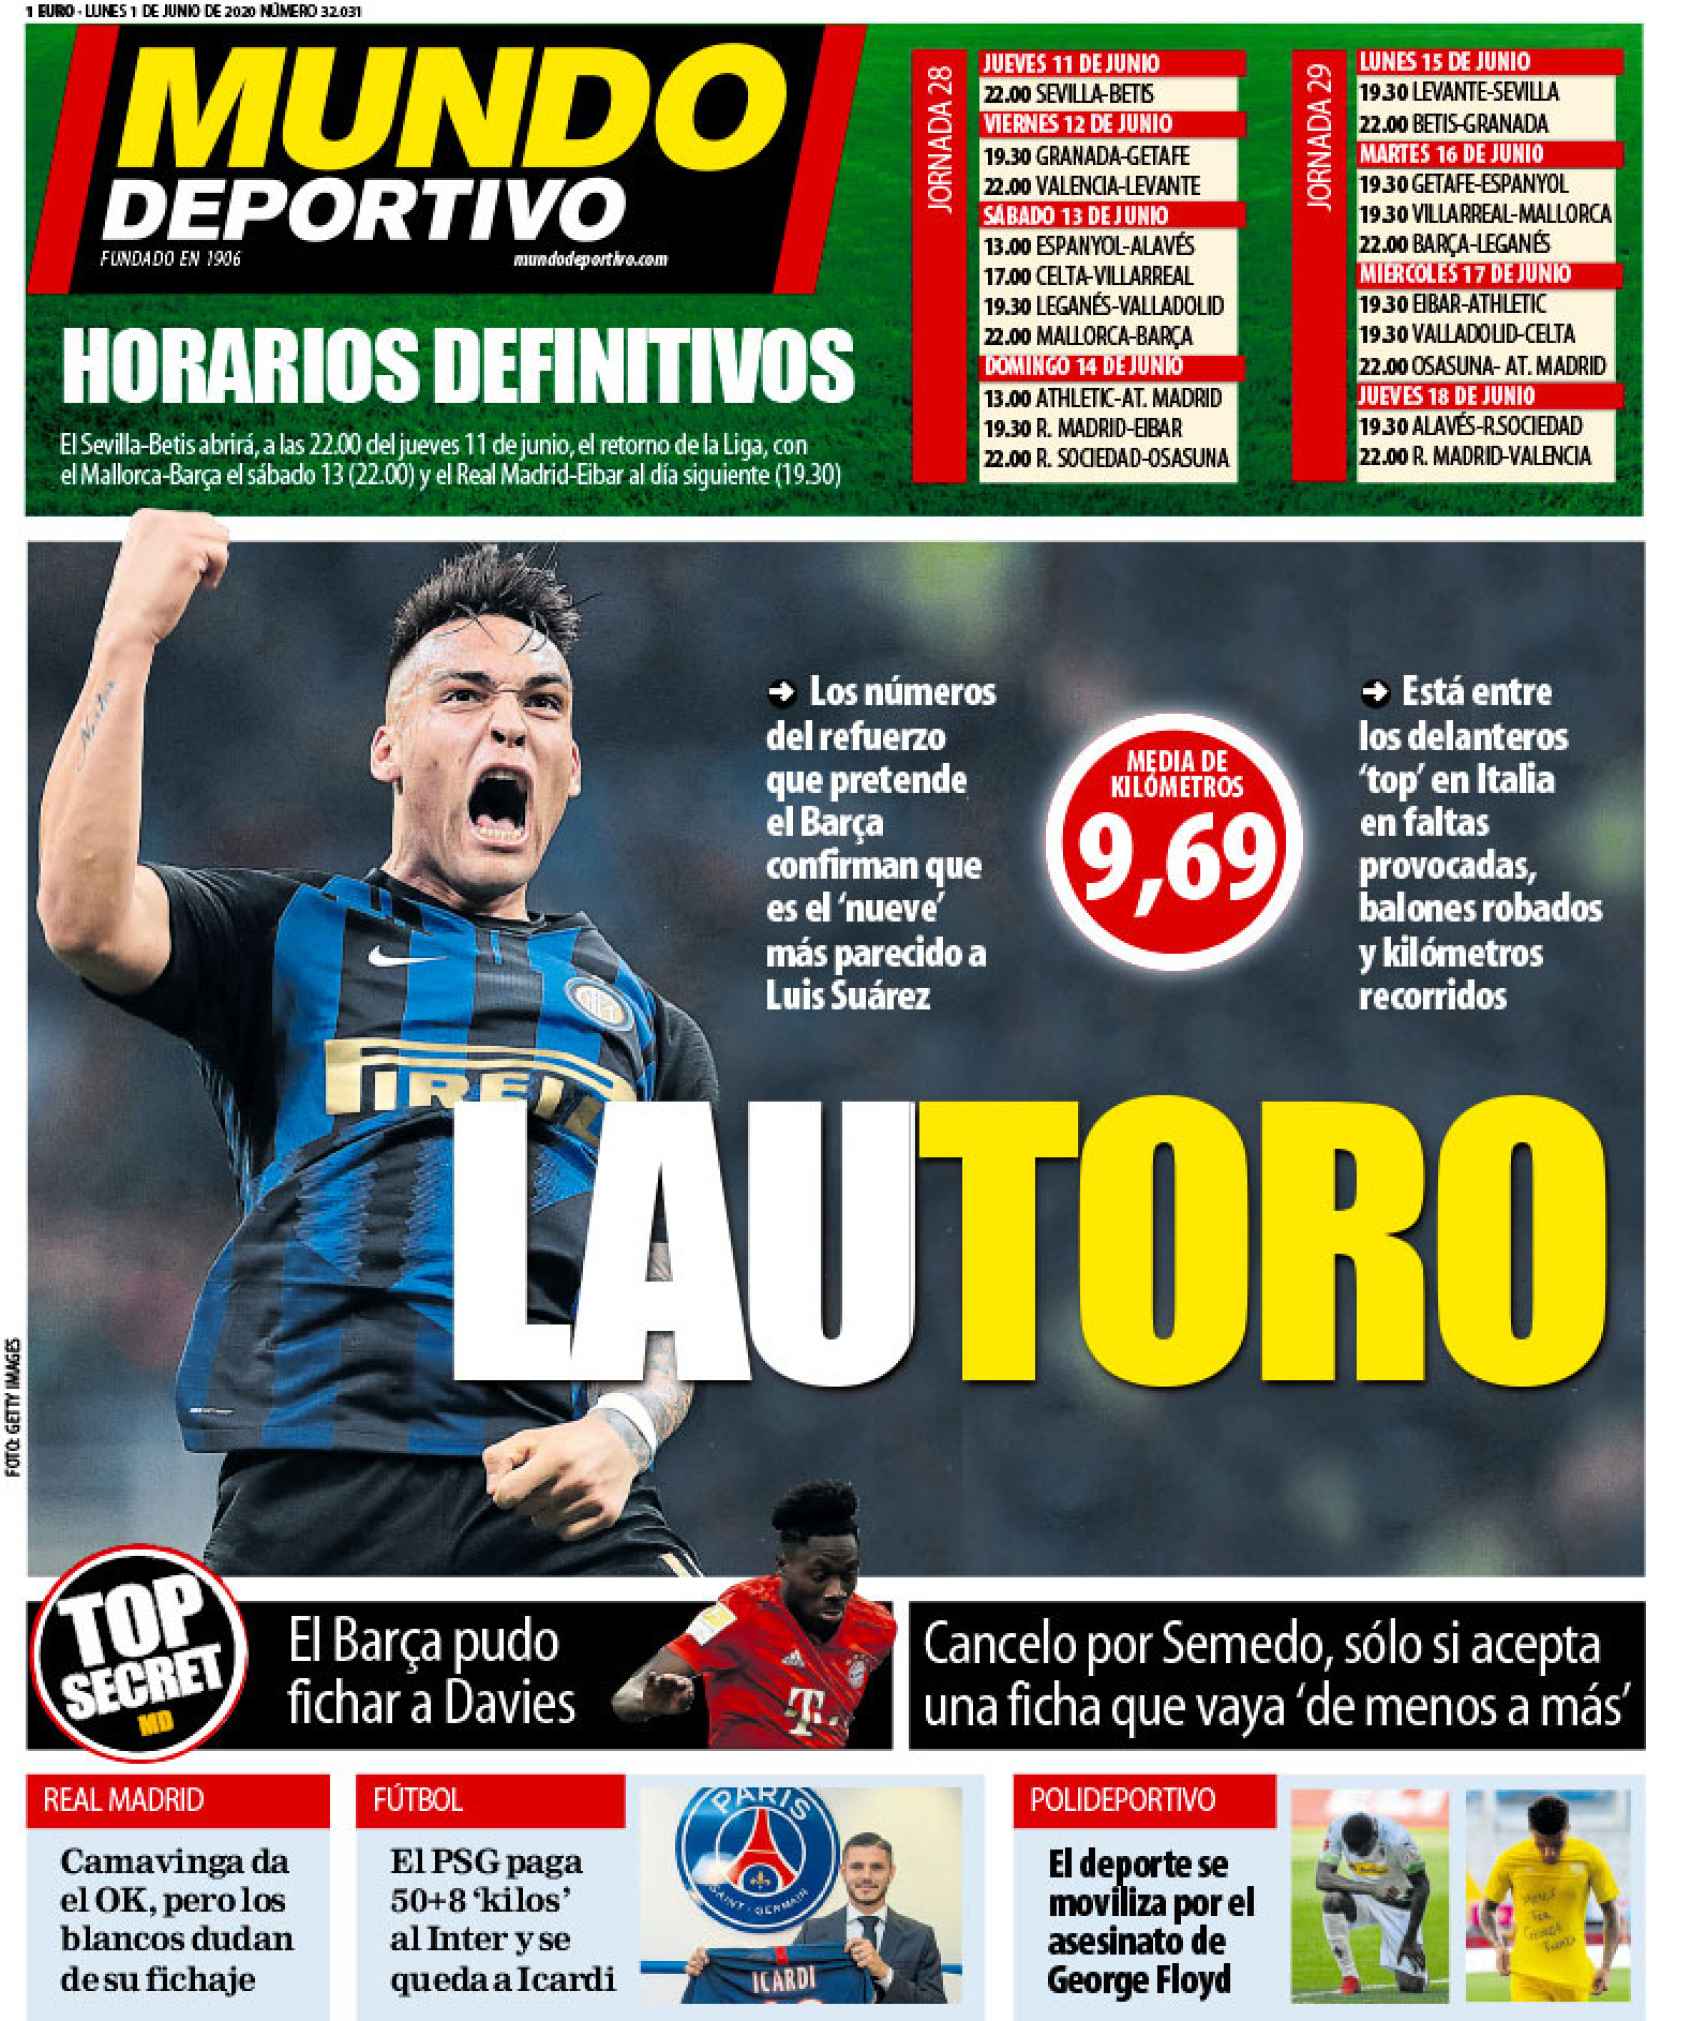 La portada del diario Mundo Deportivo (01/06/2020)